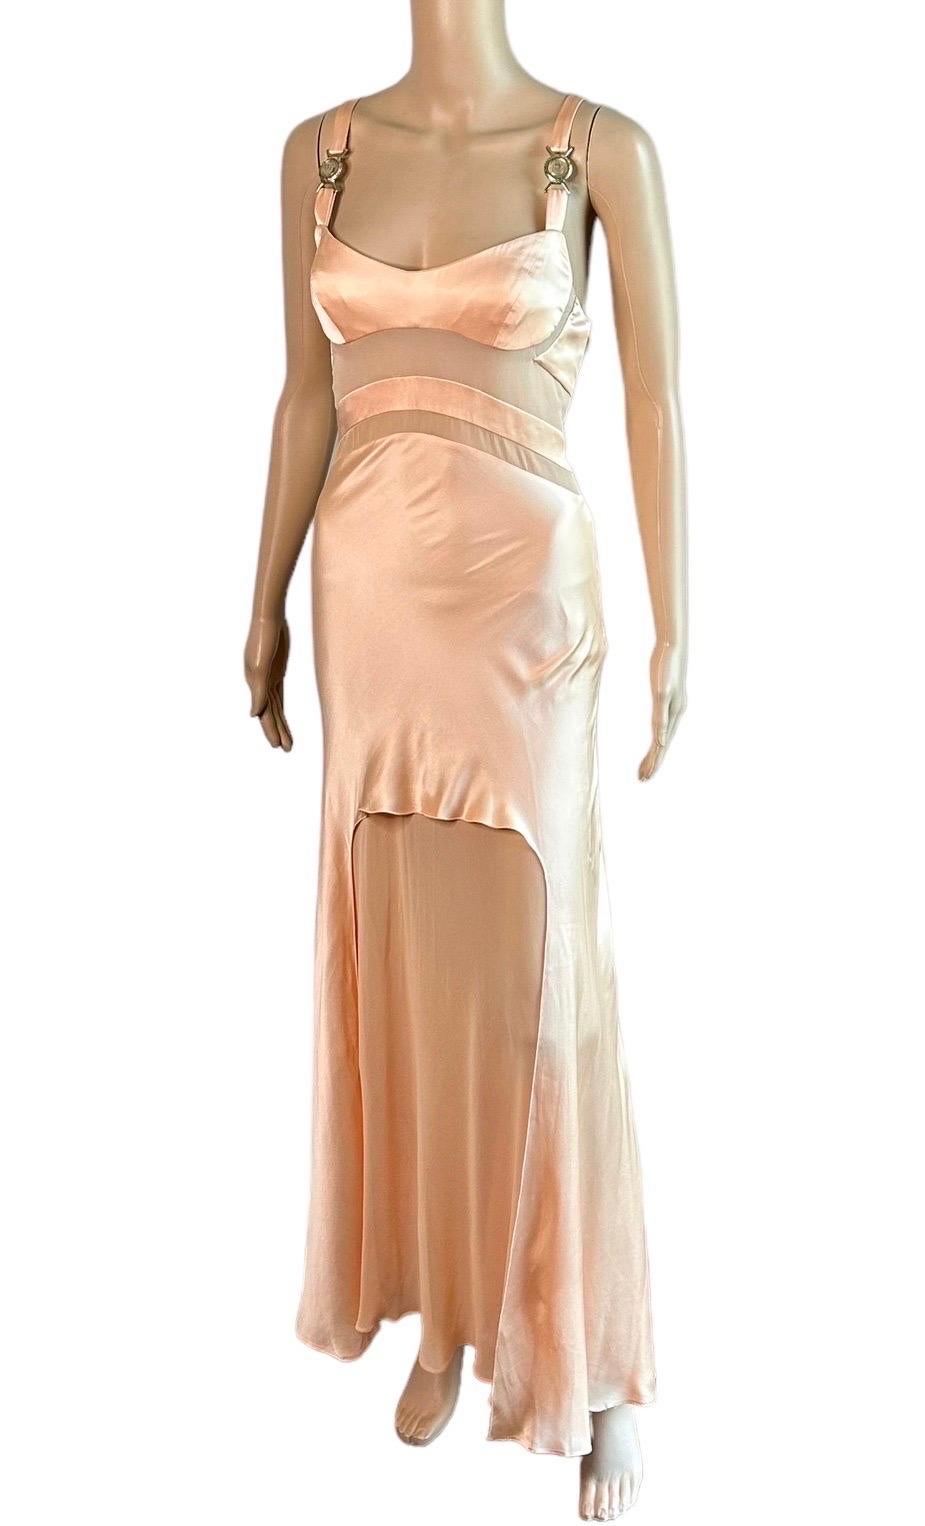 Versace S/S 2005 Laufsteg Durchsichtige Paneele Medusa Logo Seide Slip Abendkleid Kleid  5